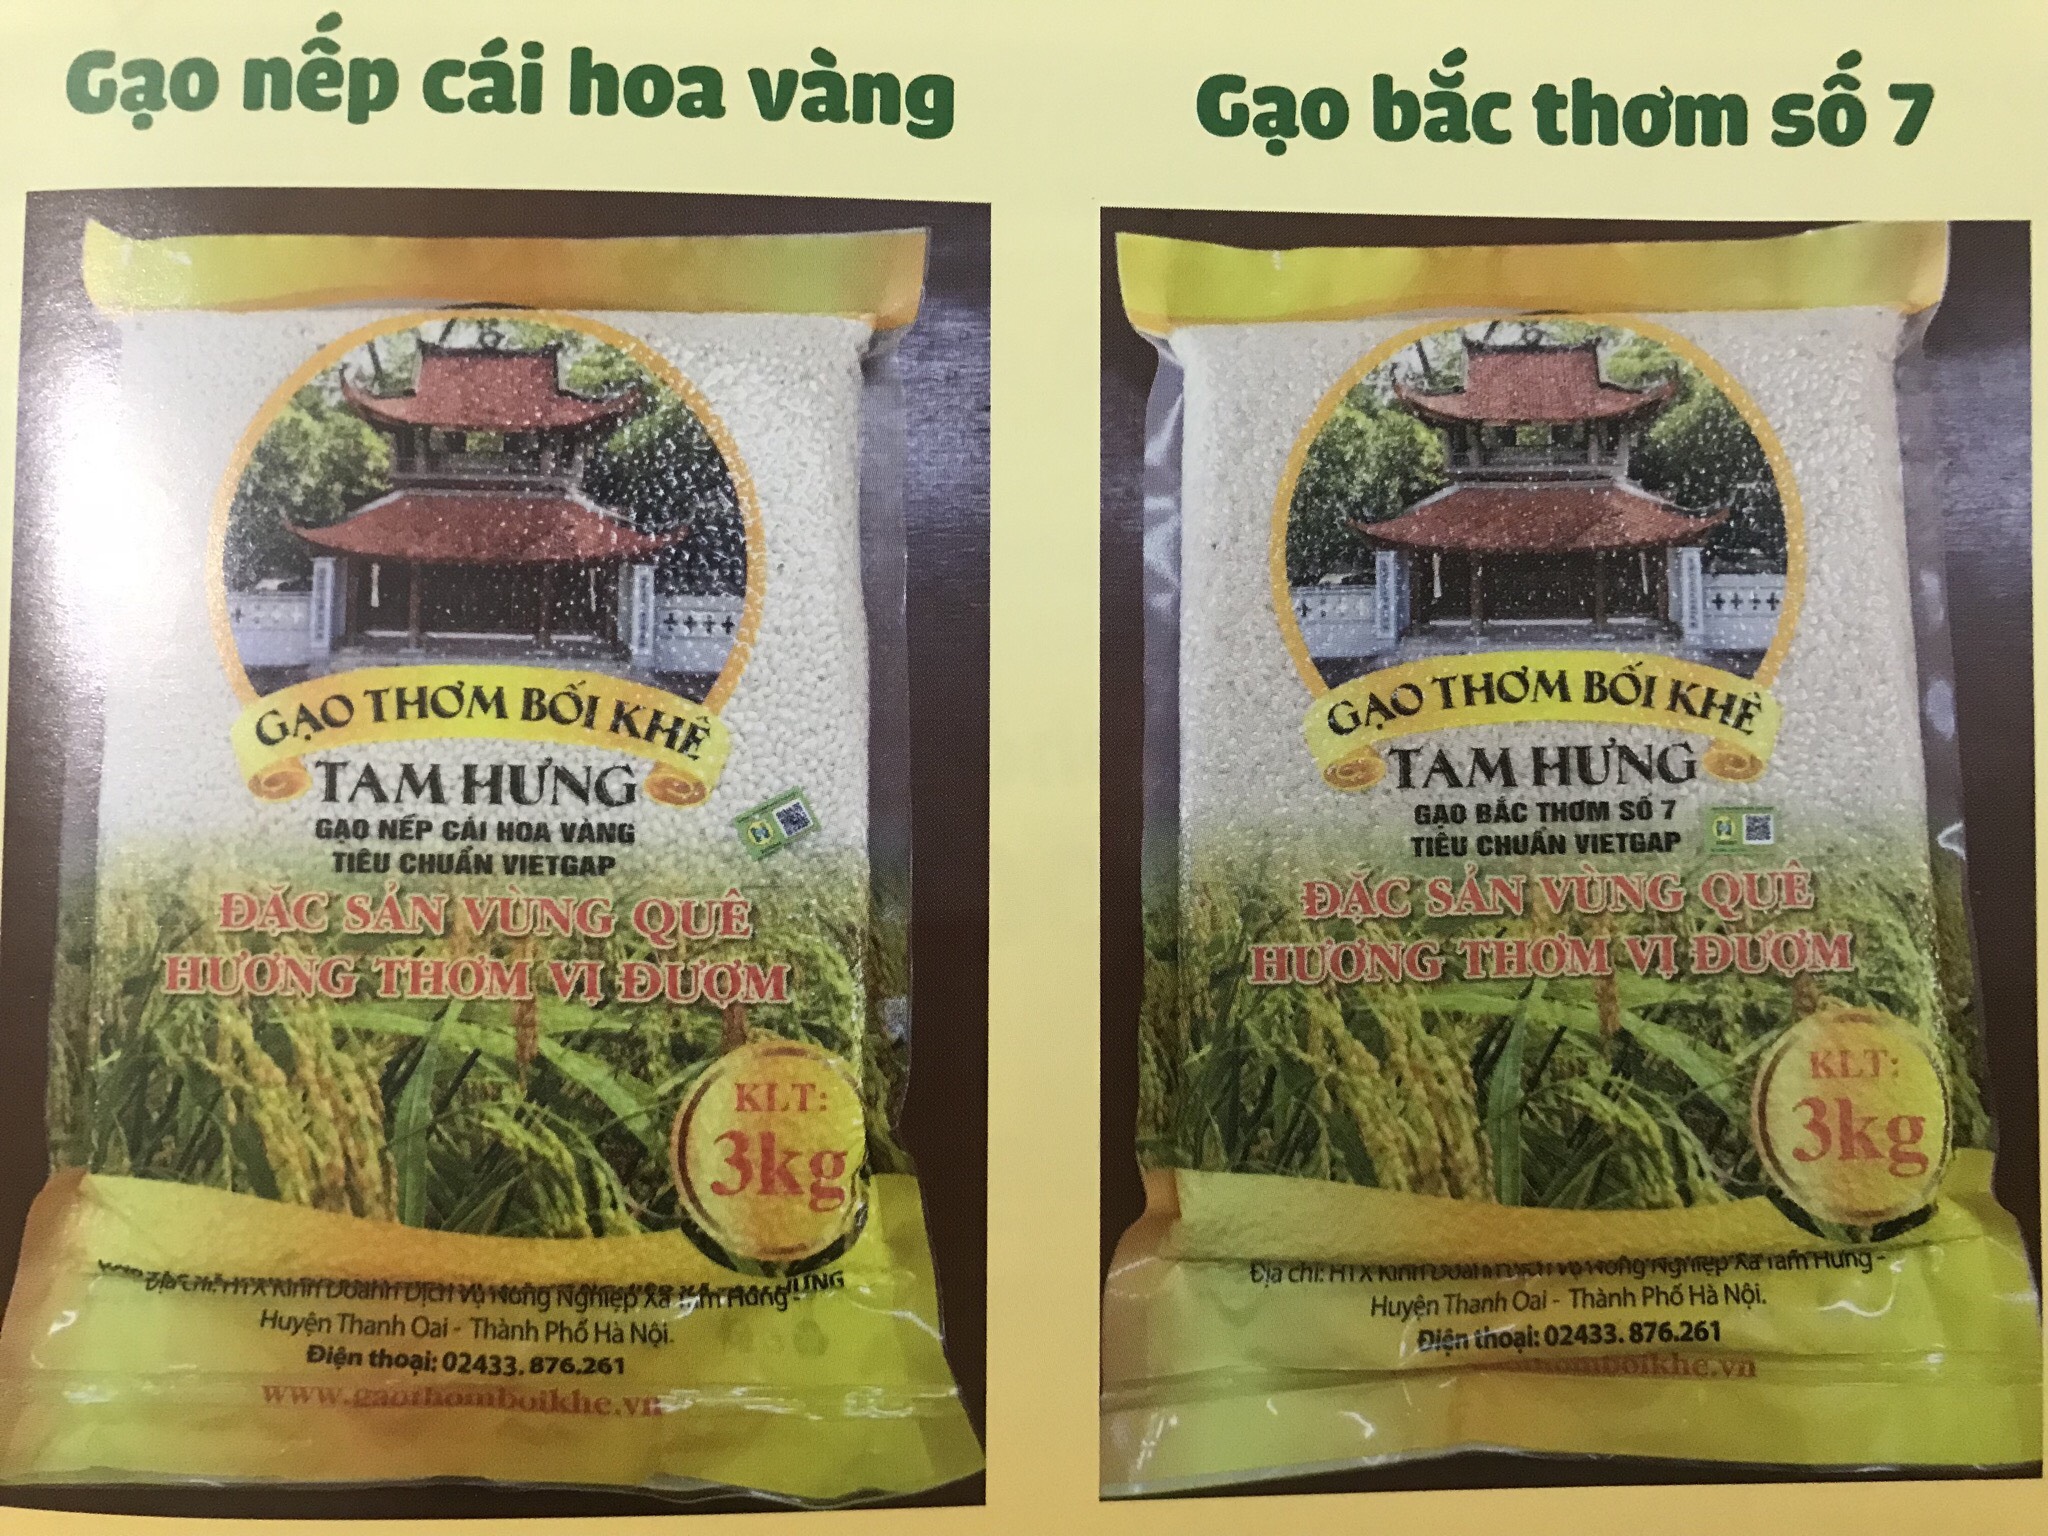 HTX Nông nghiệp Tam Hưng: 2 sản phẩm đạt OCOP 4 sao